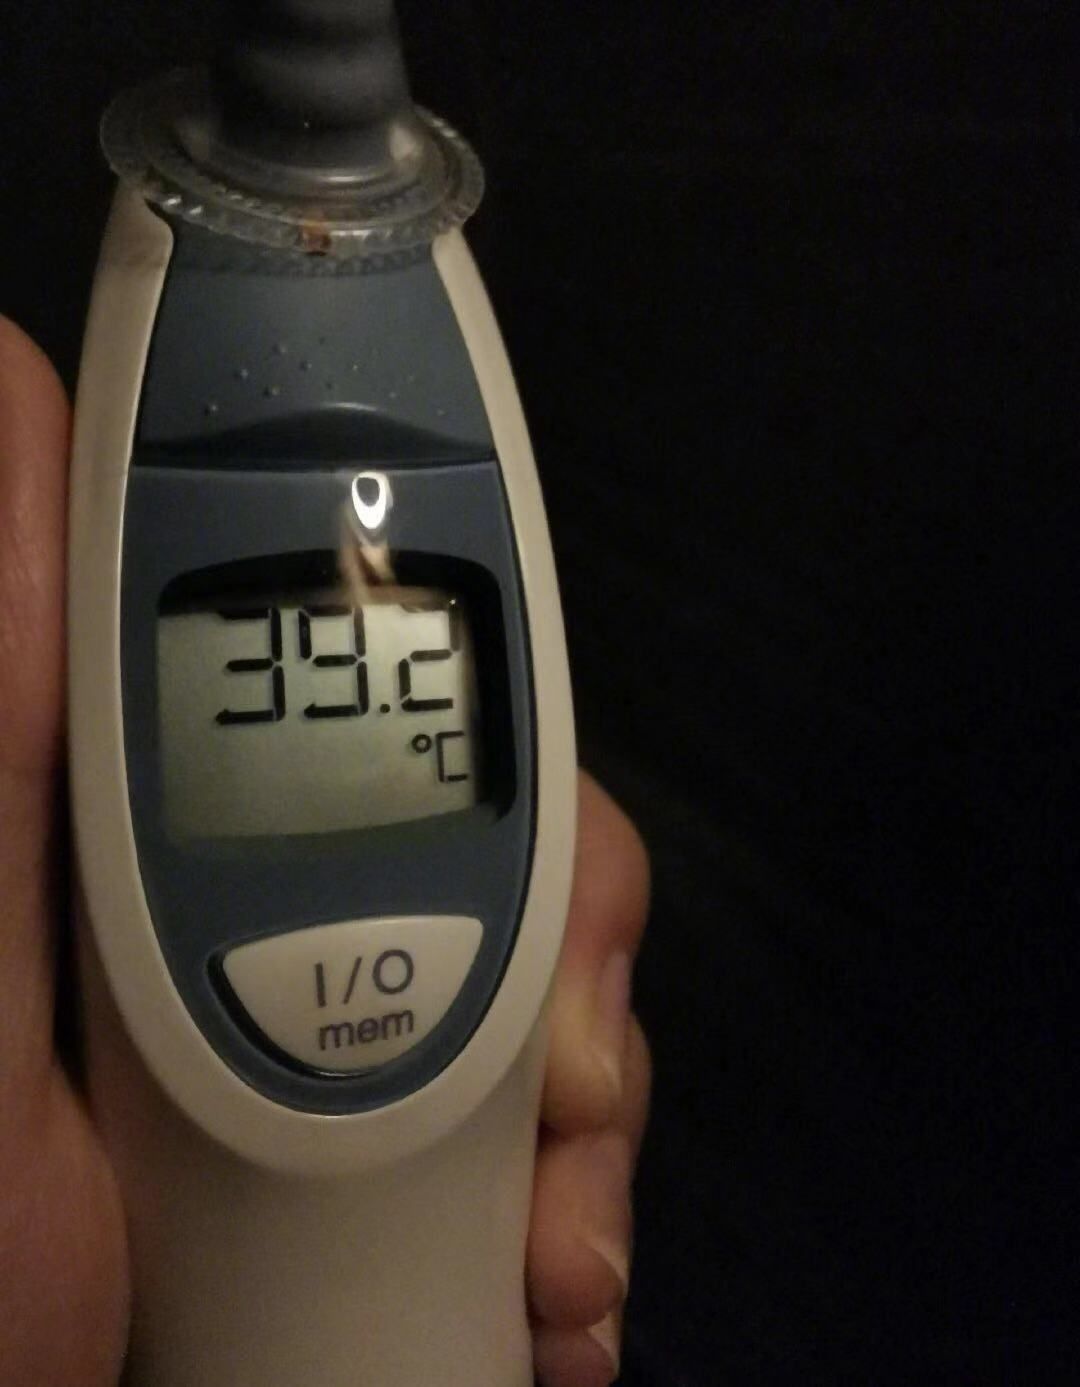 近日,杨云在微博上晒出了一张体温计照片,照片里的体温计显示着39